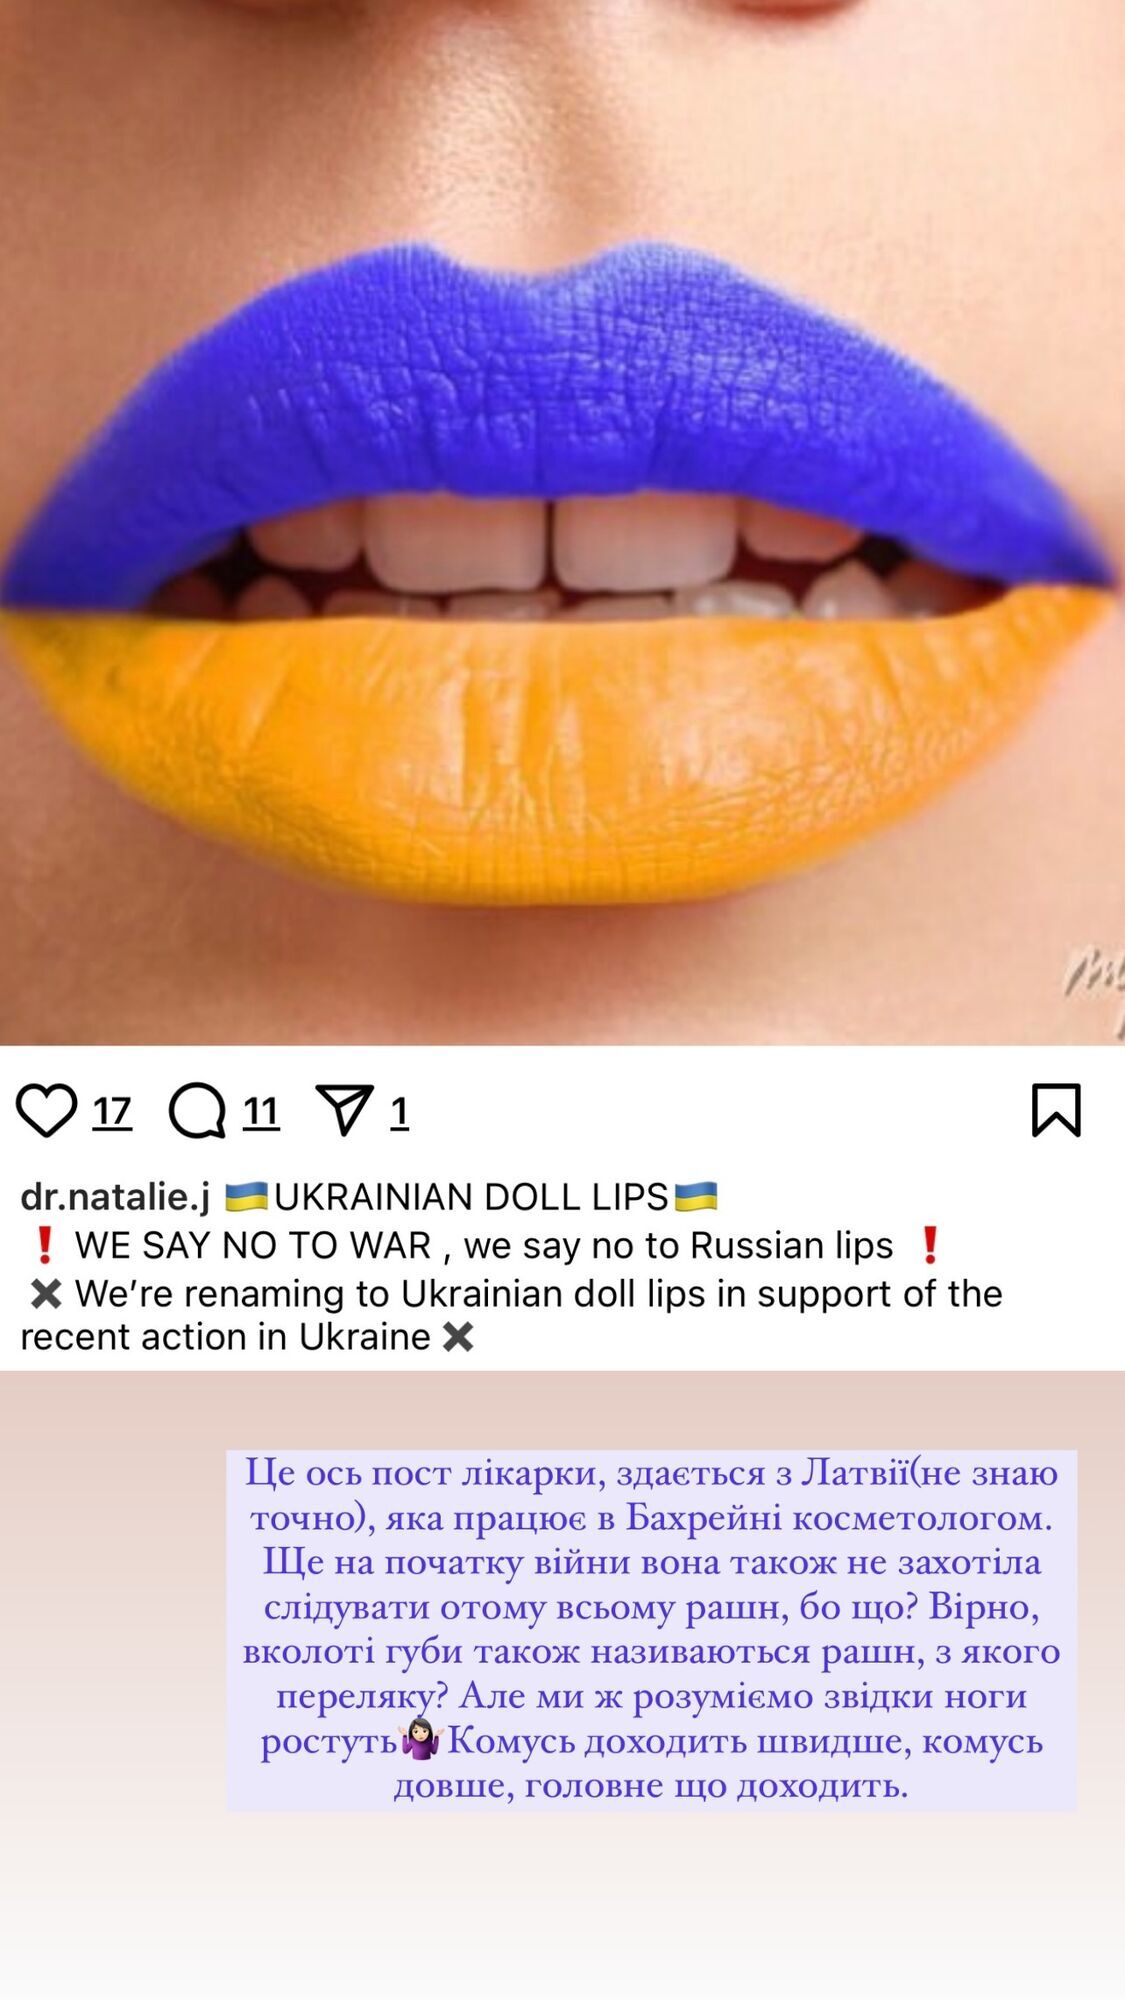 Салон в Нью-Йорке отказался от "русского маникюра" после жалобы украинки. Ранее "русские губы" отменили в Бахрейне